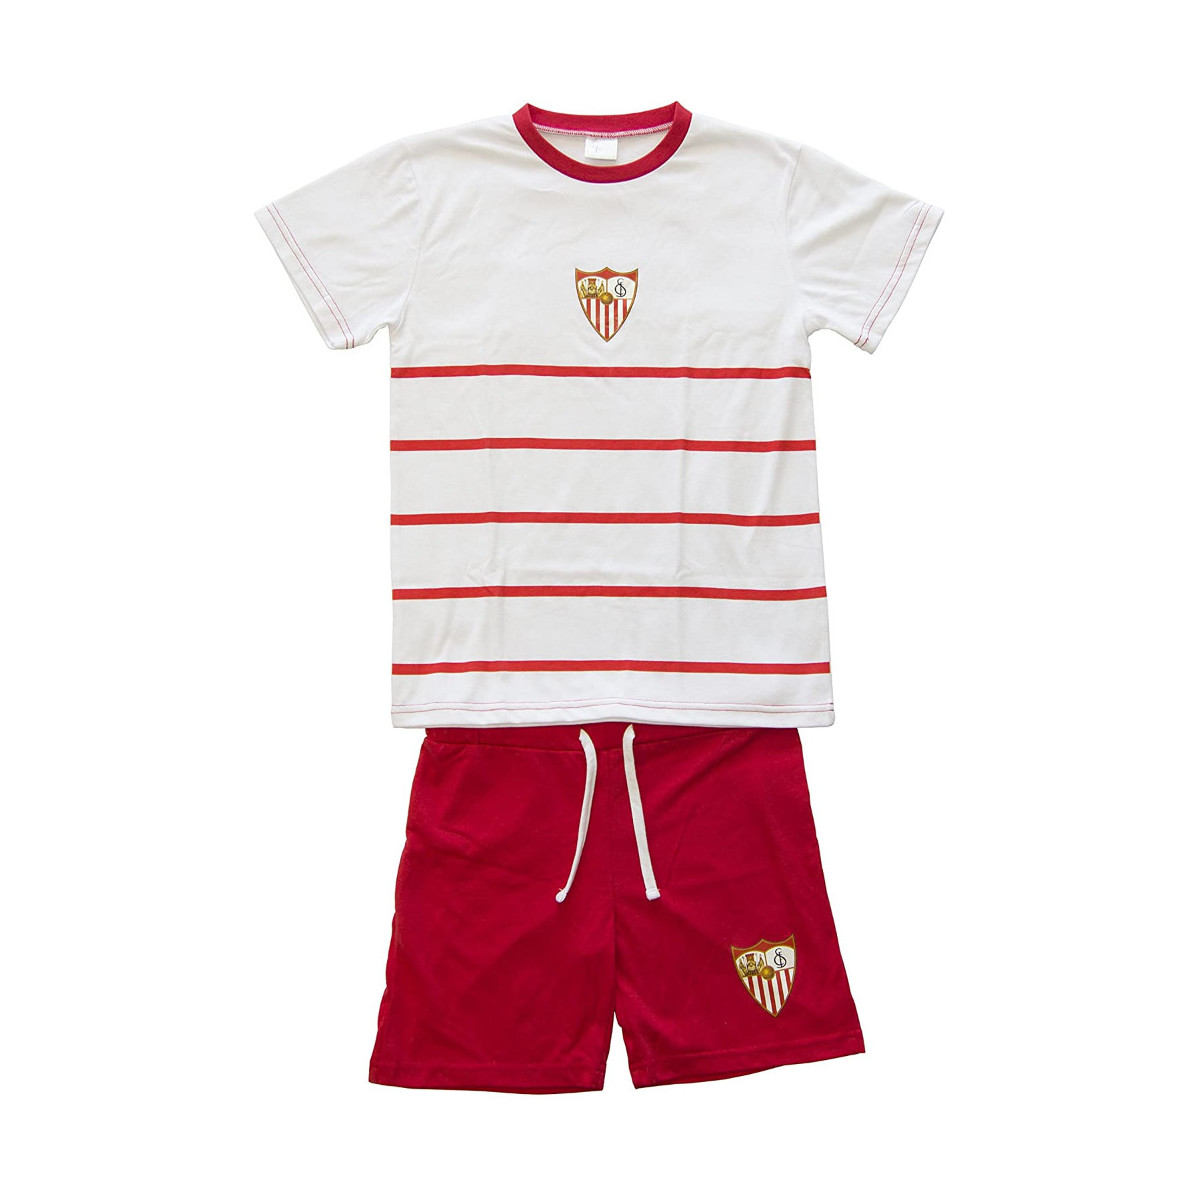 Textil Criança Pijamas / Camisas de dormir Sevilla Futbol Club 69253 Branco